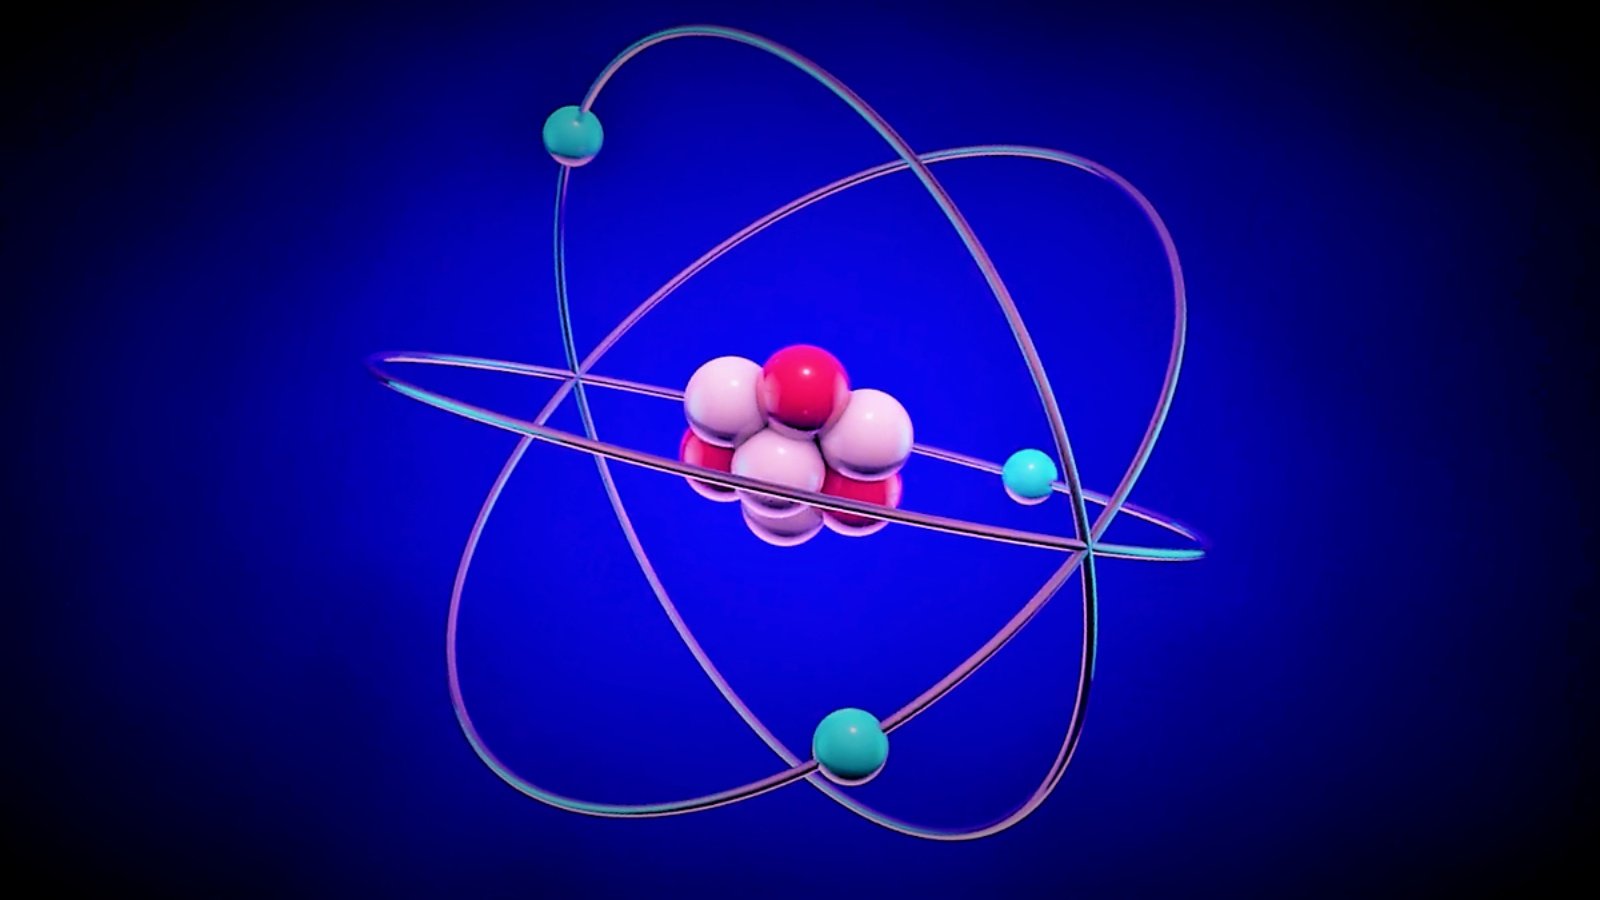 Ядерная физика 1 тема. Протон ядерная физика. Атом жана молекула. Структура атома. Электроны в атоме.